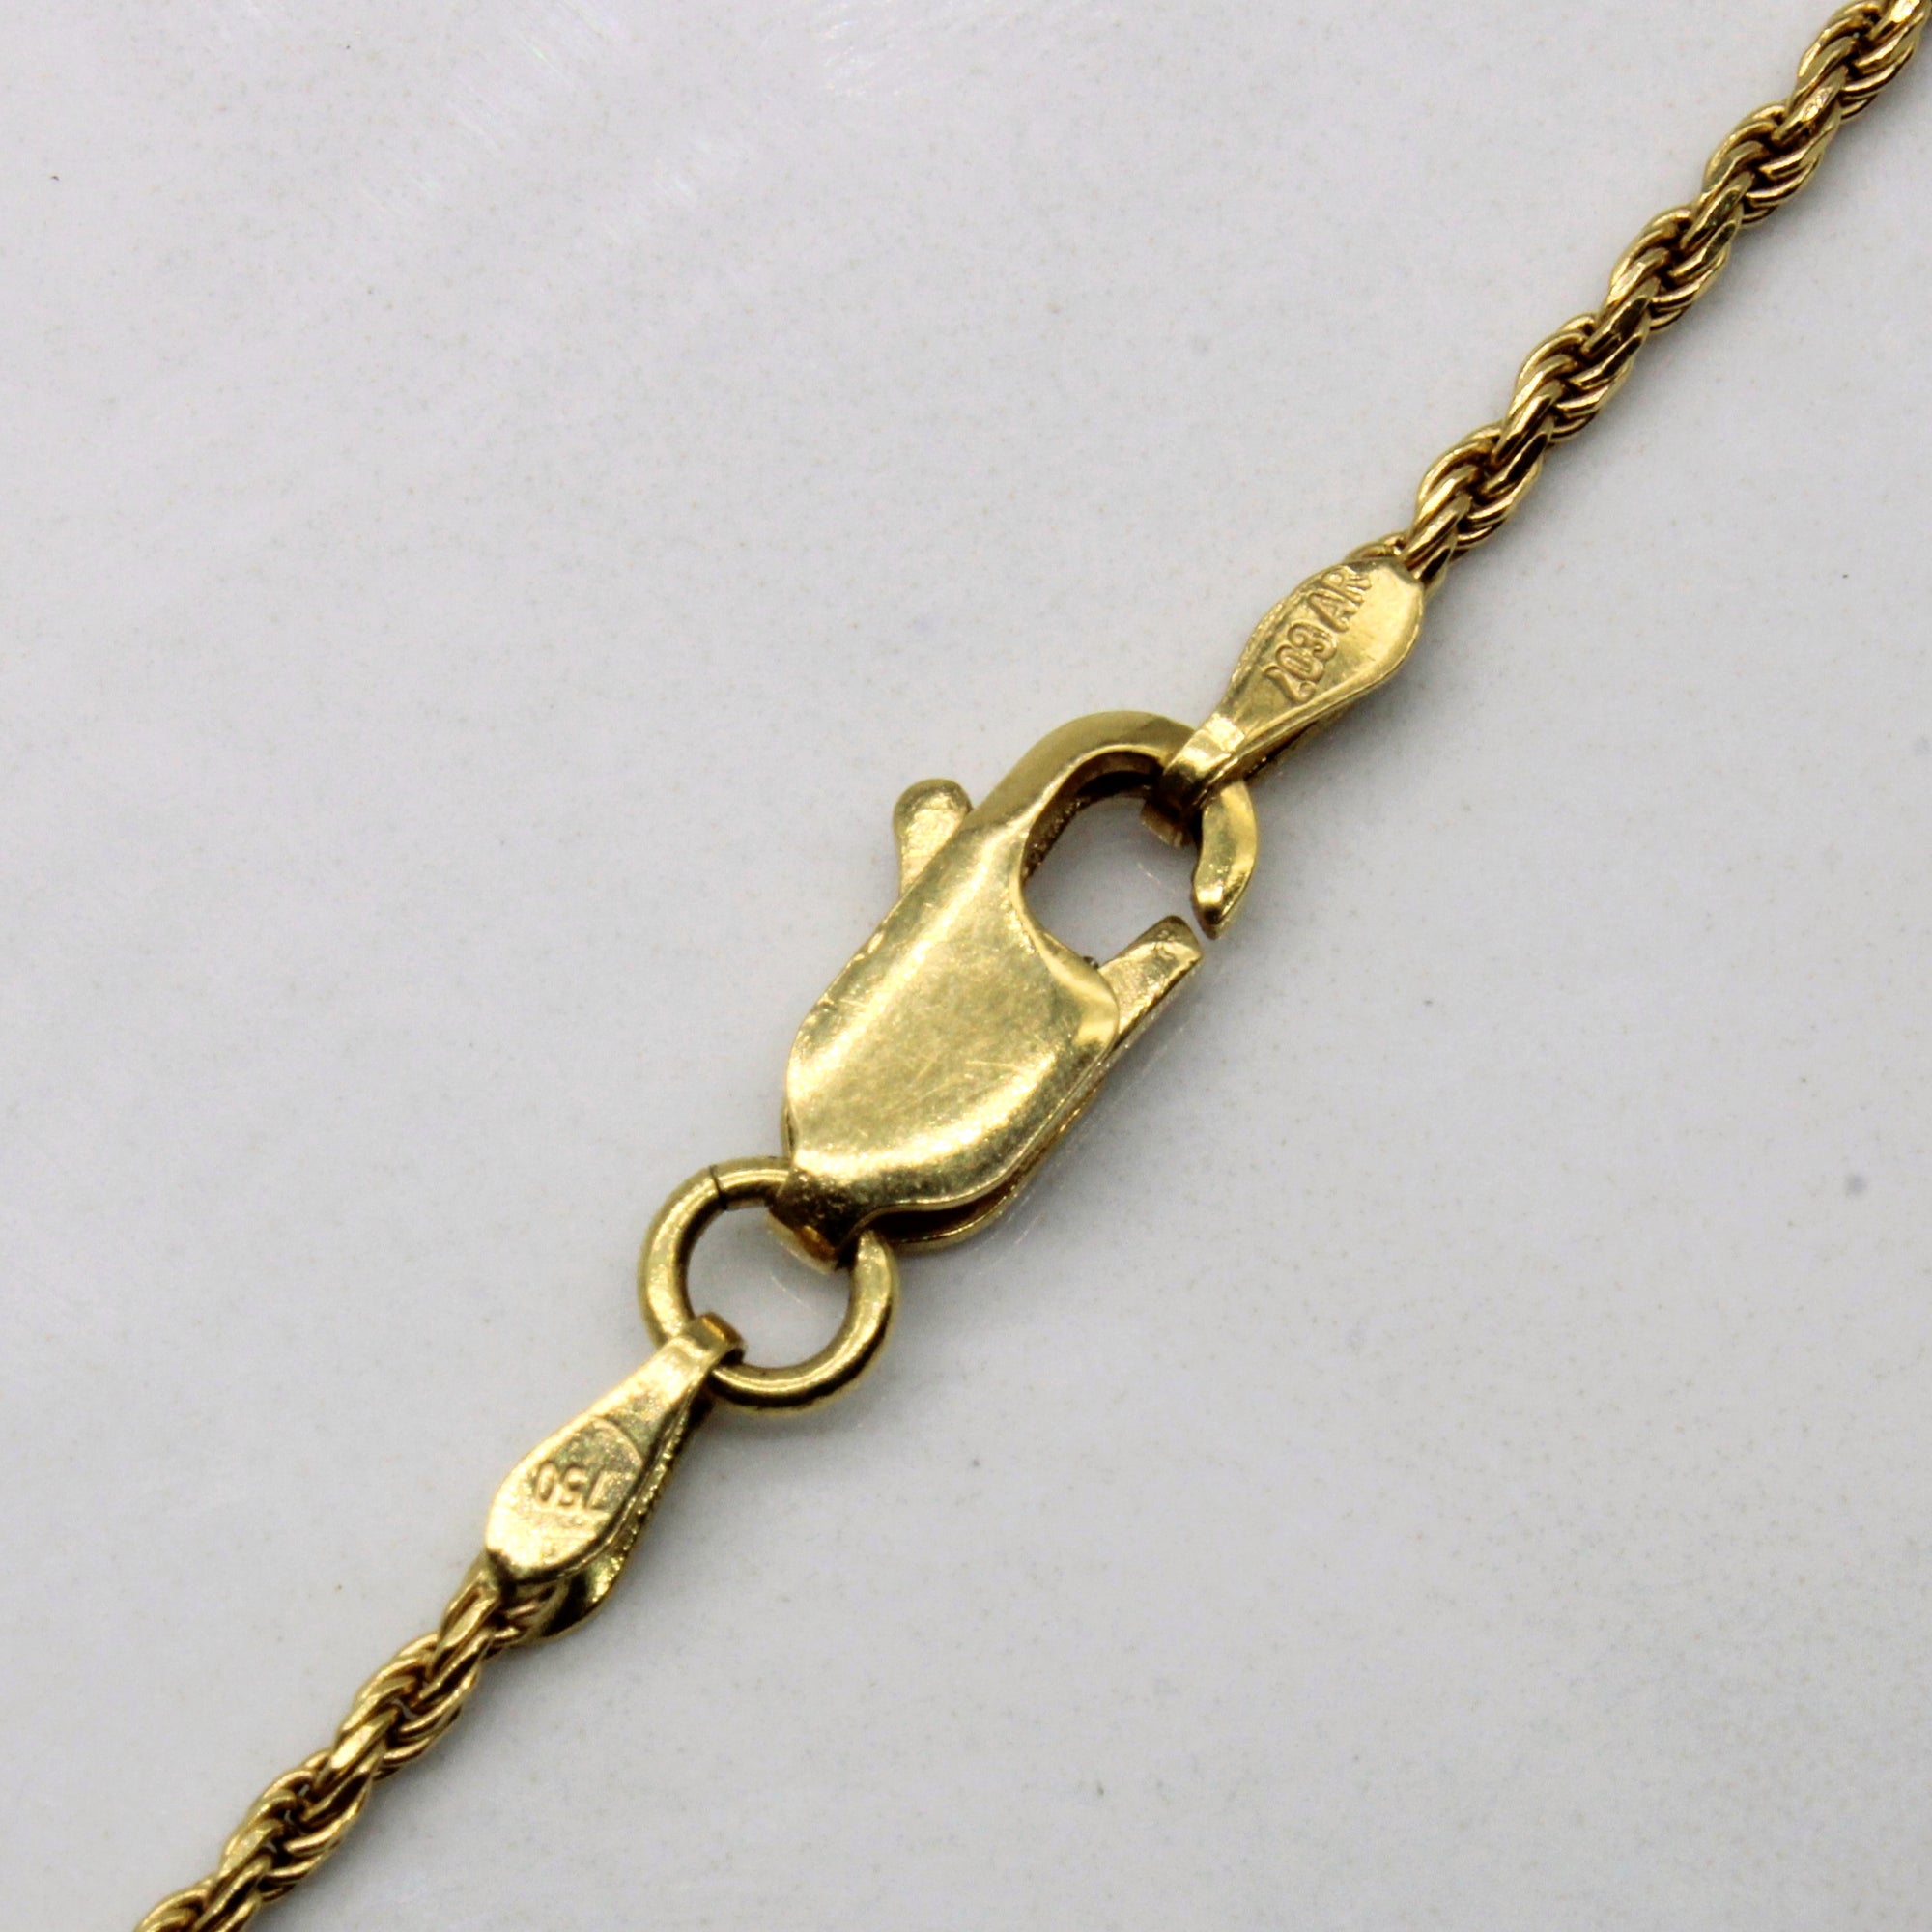 18k Yellow Gold Rope Chain | 25